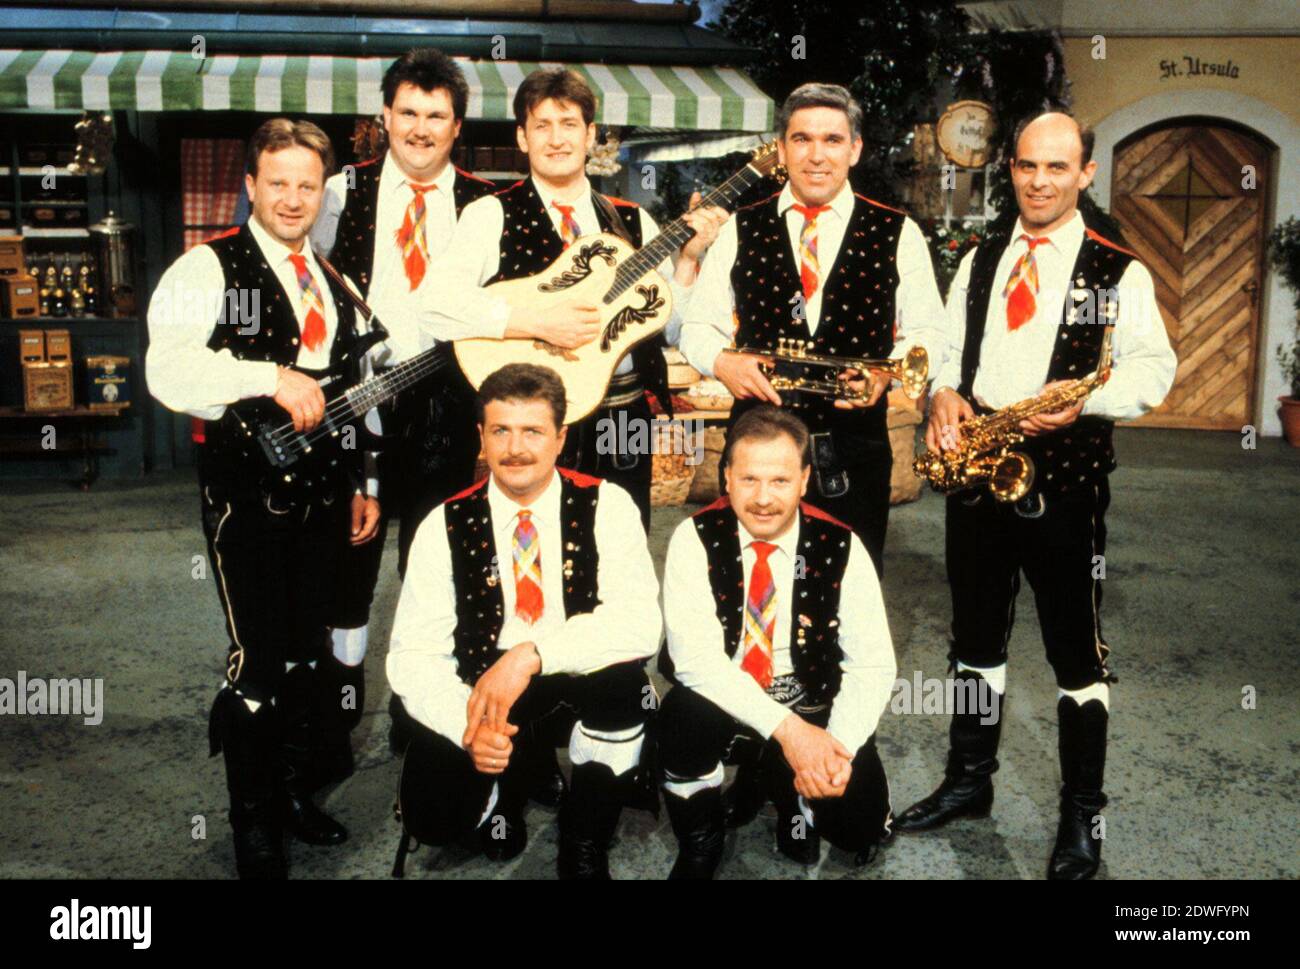 KASTELRUTHER SPATZEN, Volksmusik-Gruppe aus Südtirol, circa 1998. KASTELRUTHER SPATZEN, gruppo di musica folk dell'Alto Adige, circa 1998. Foto Stock